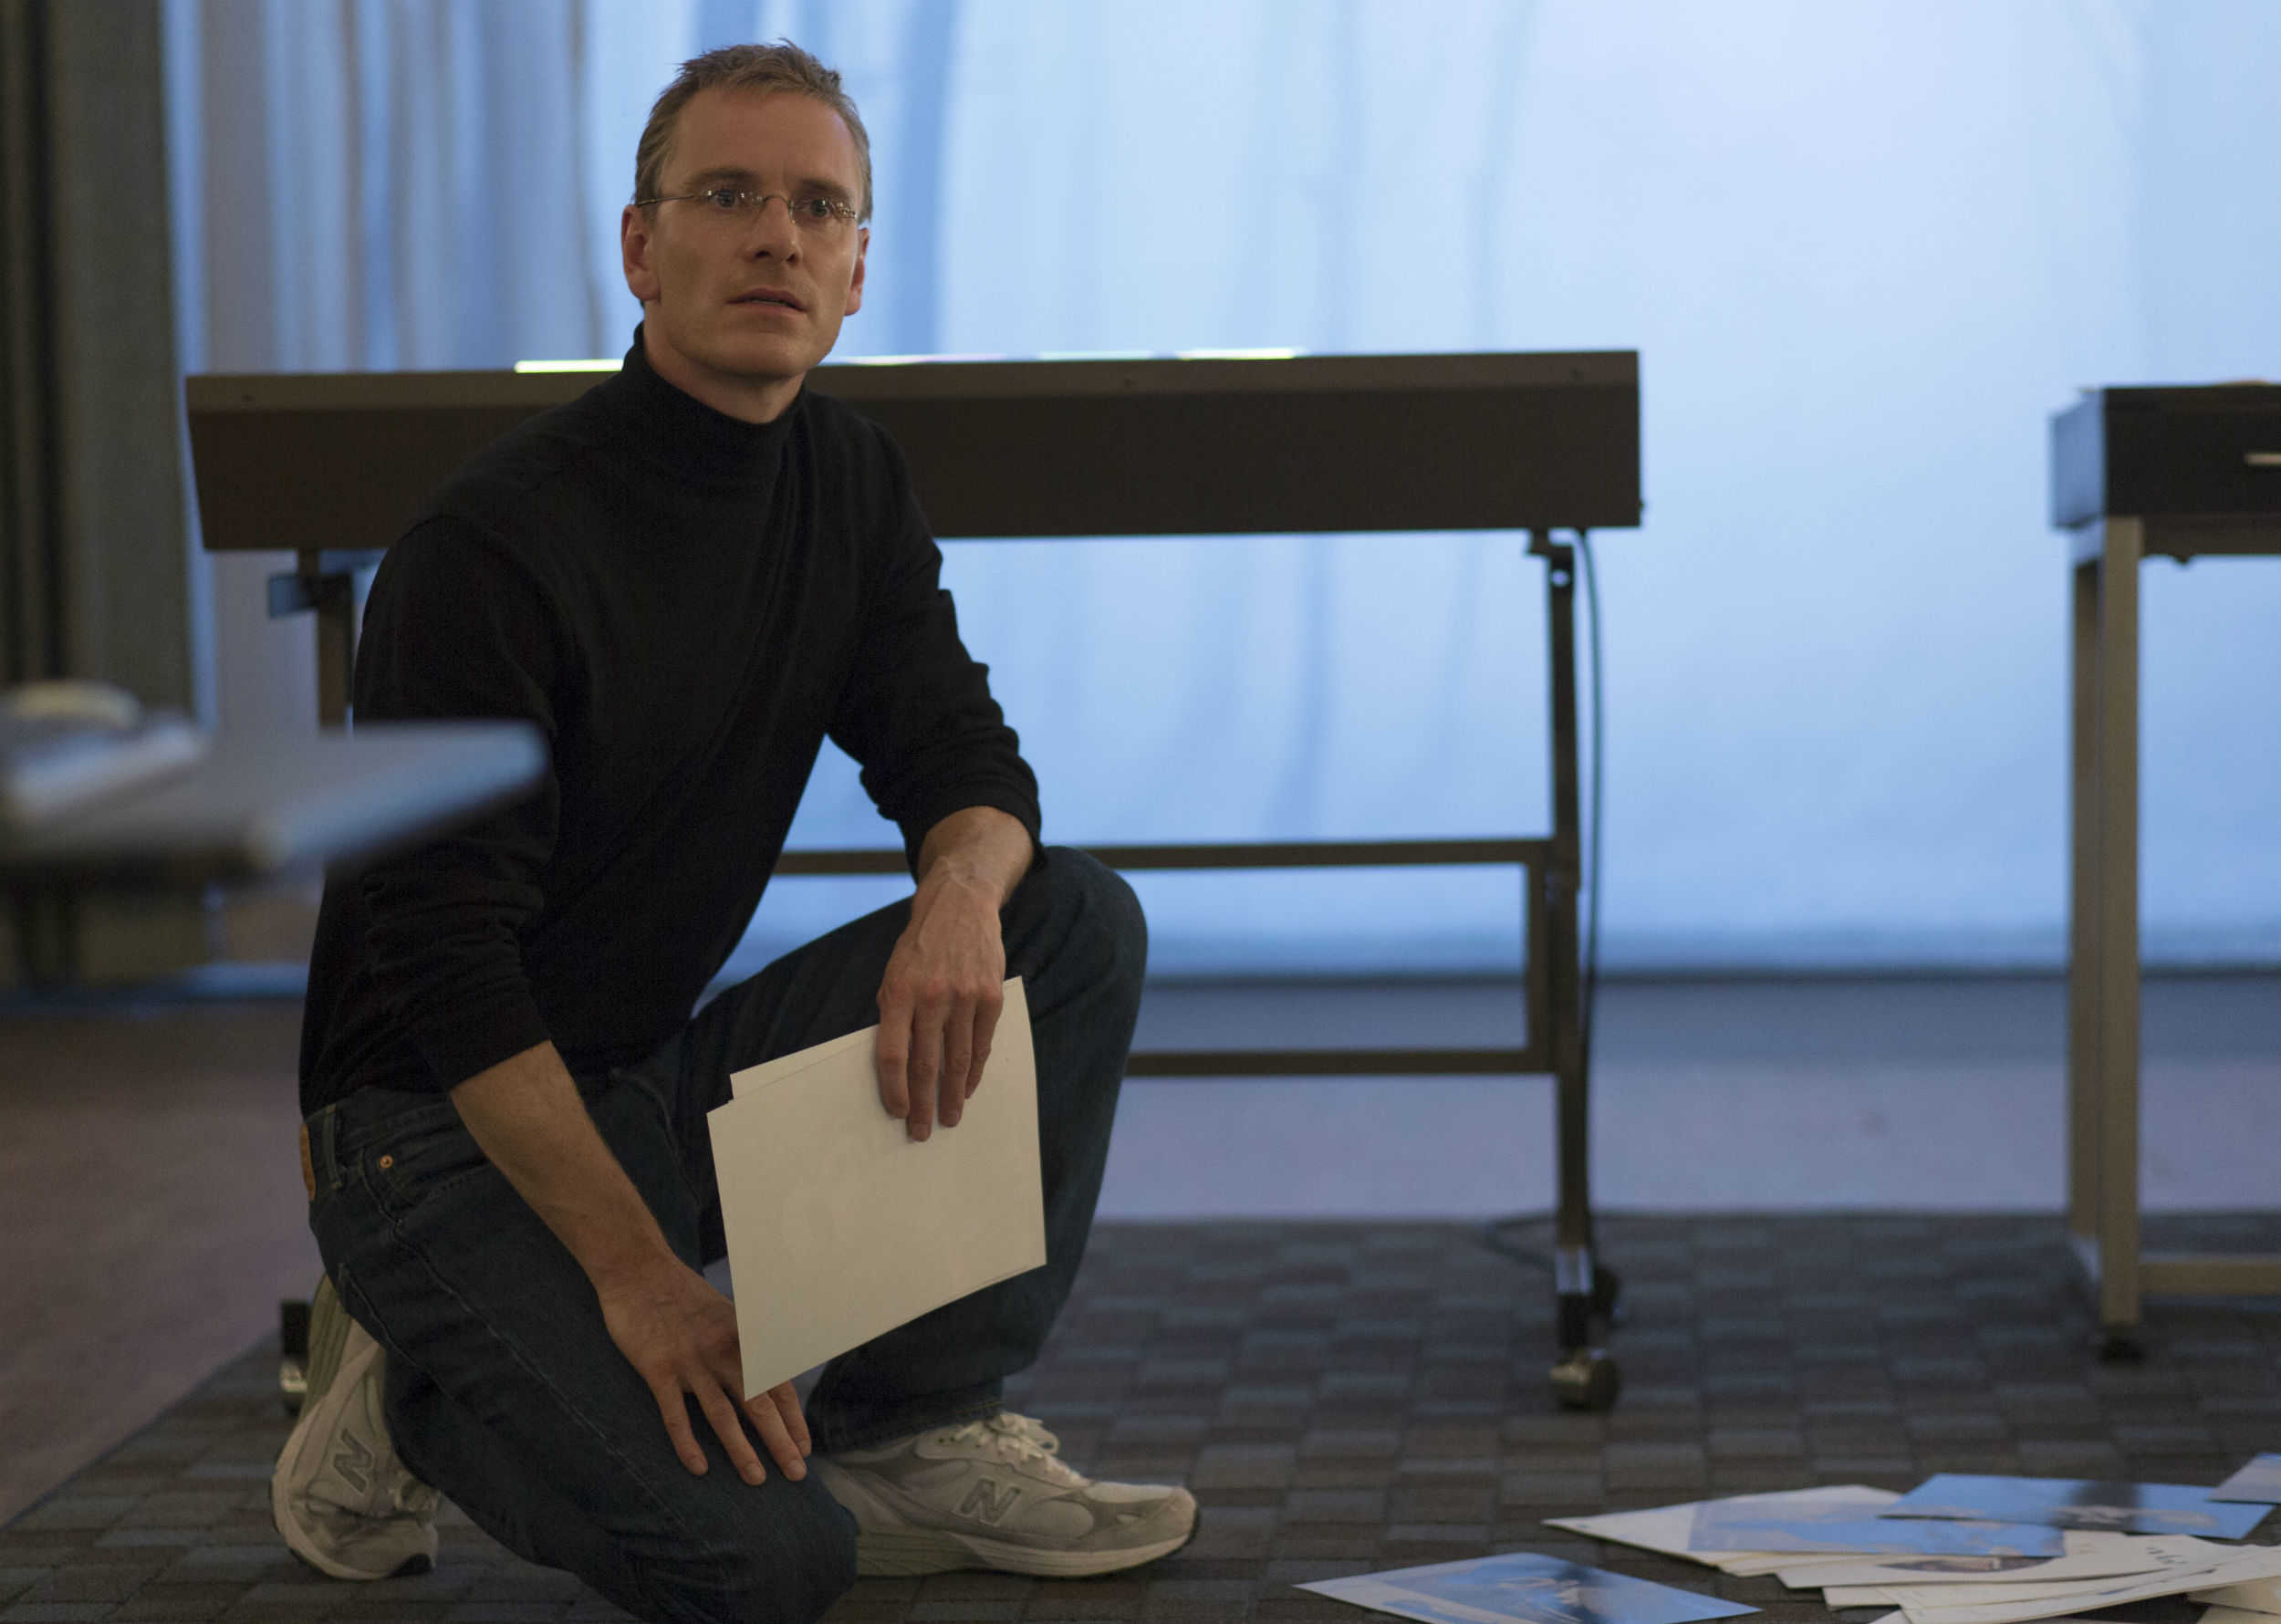 Aaron Sorkin’s Steve Jobs movie is coming to Netflix